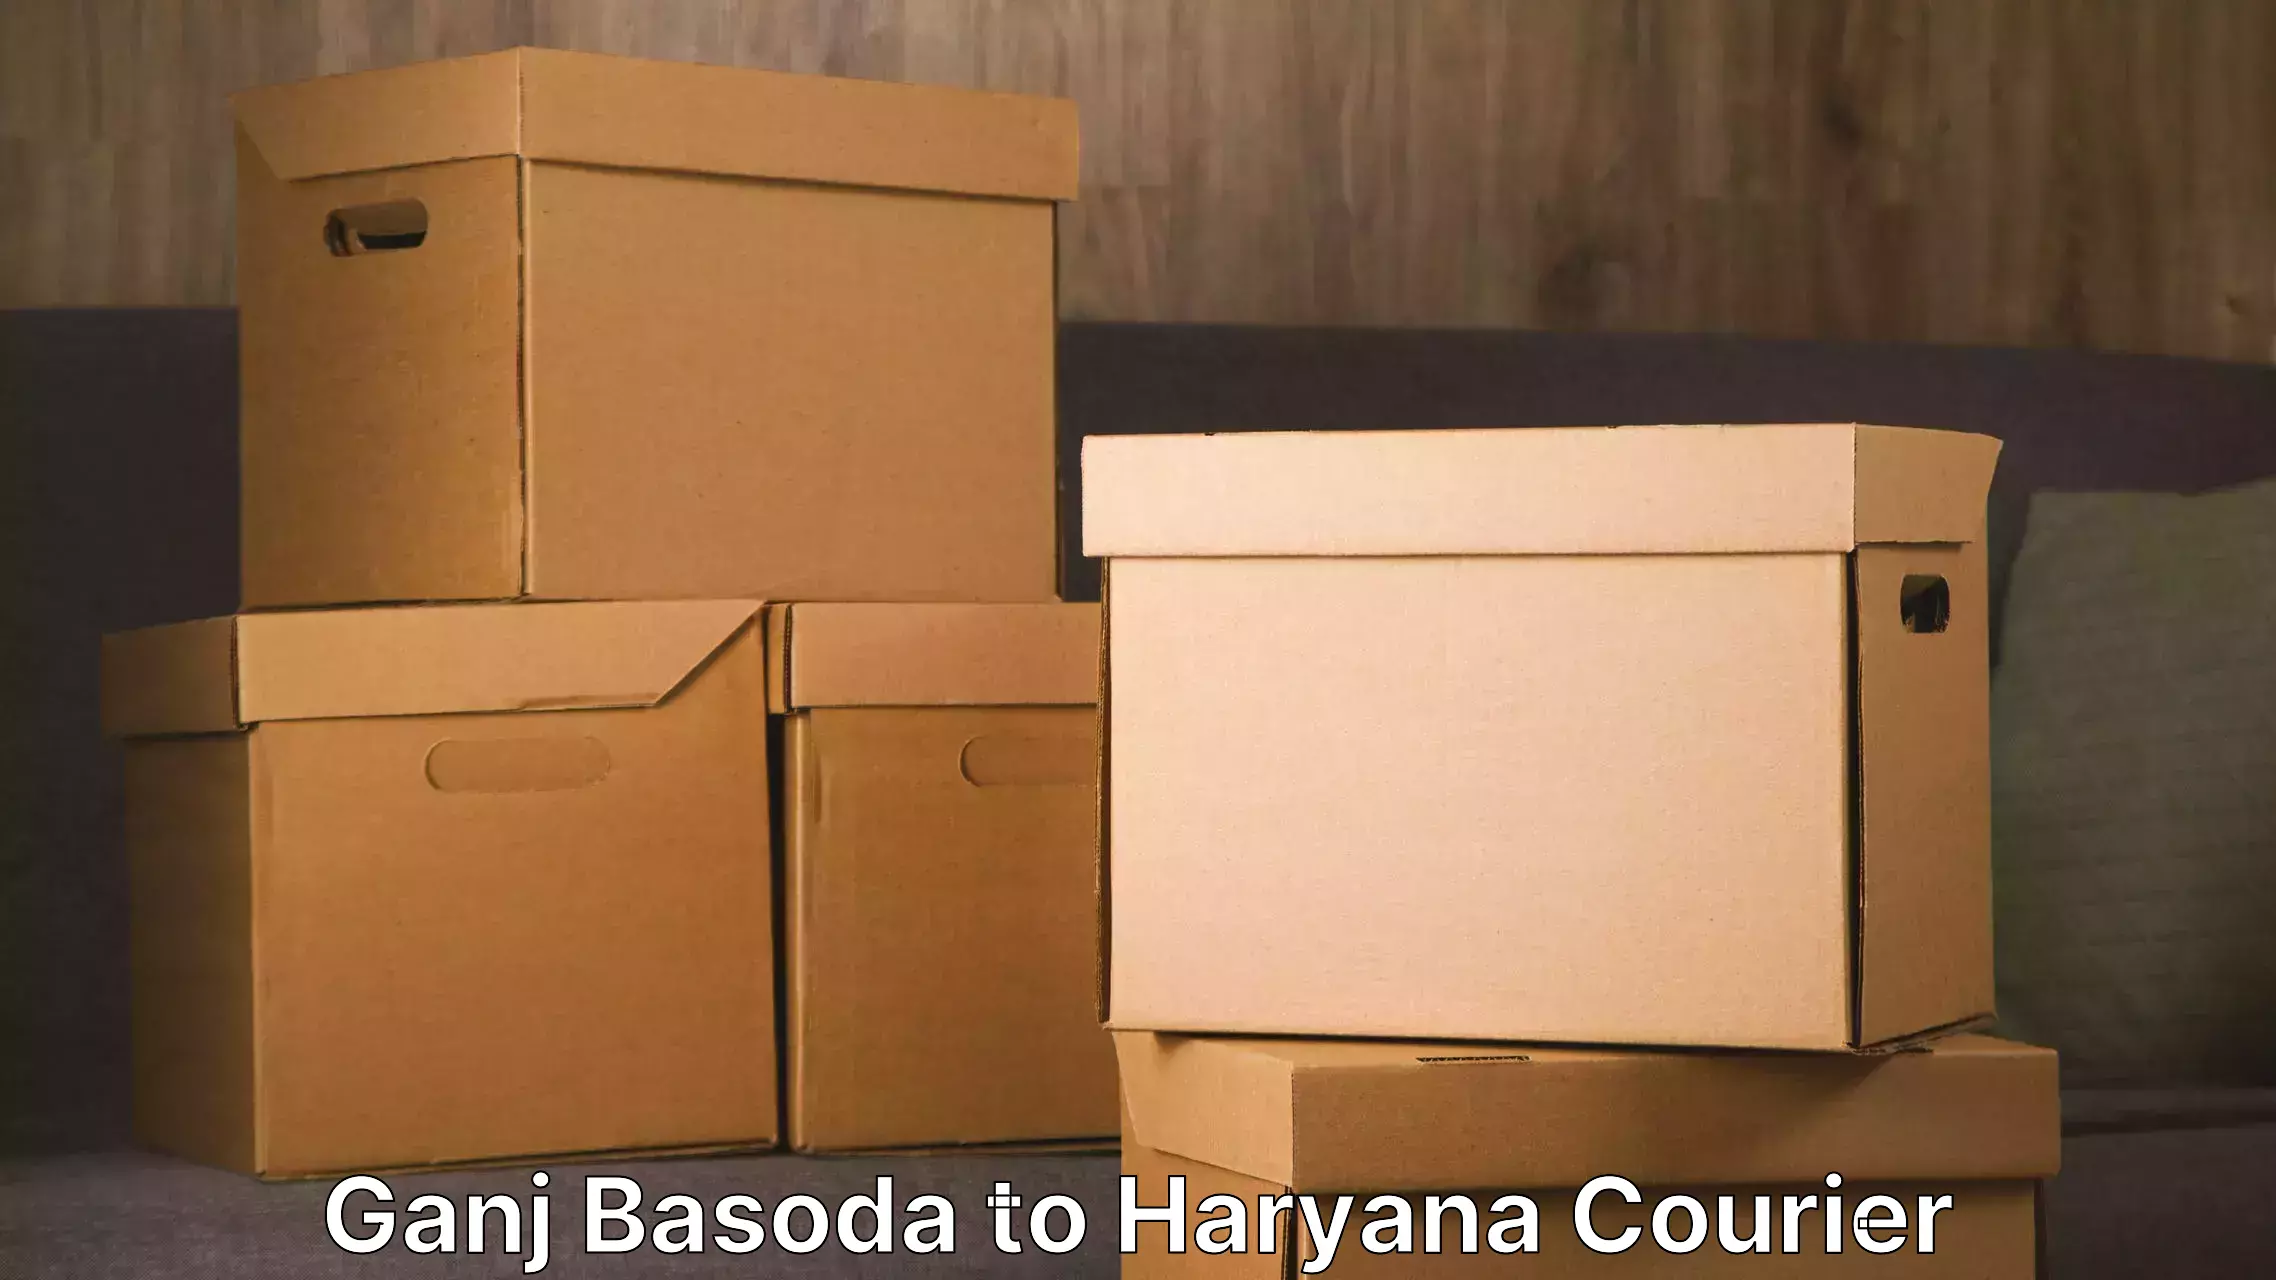 Professional furniture shifting Ganj Basoda to Chaudhary Charan Singh Haryana Agricultural University Hisar